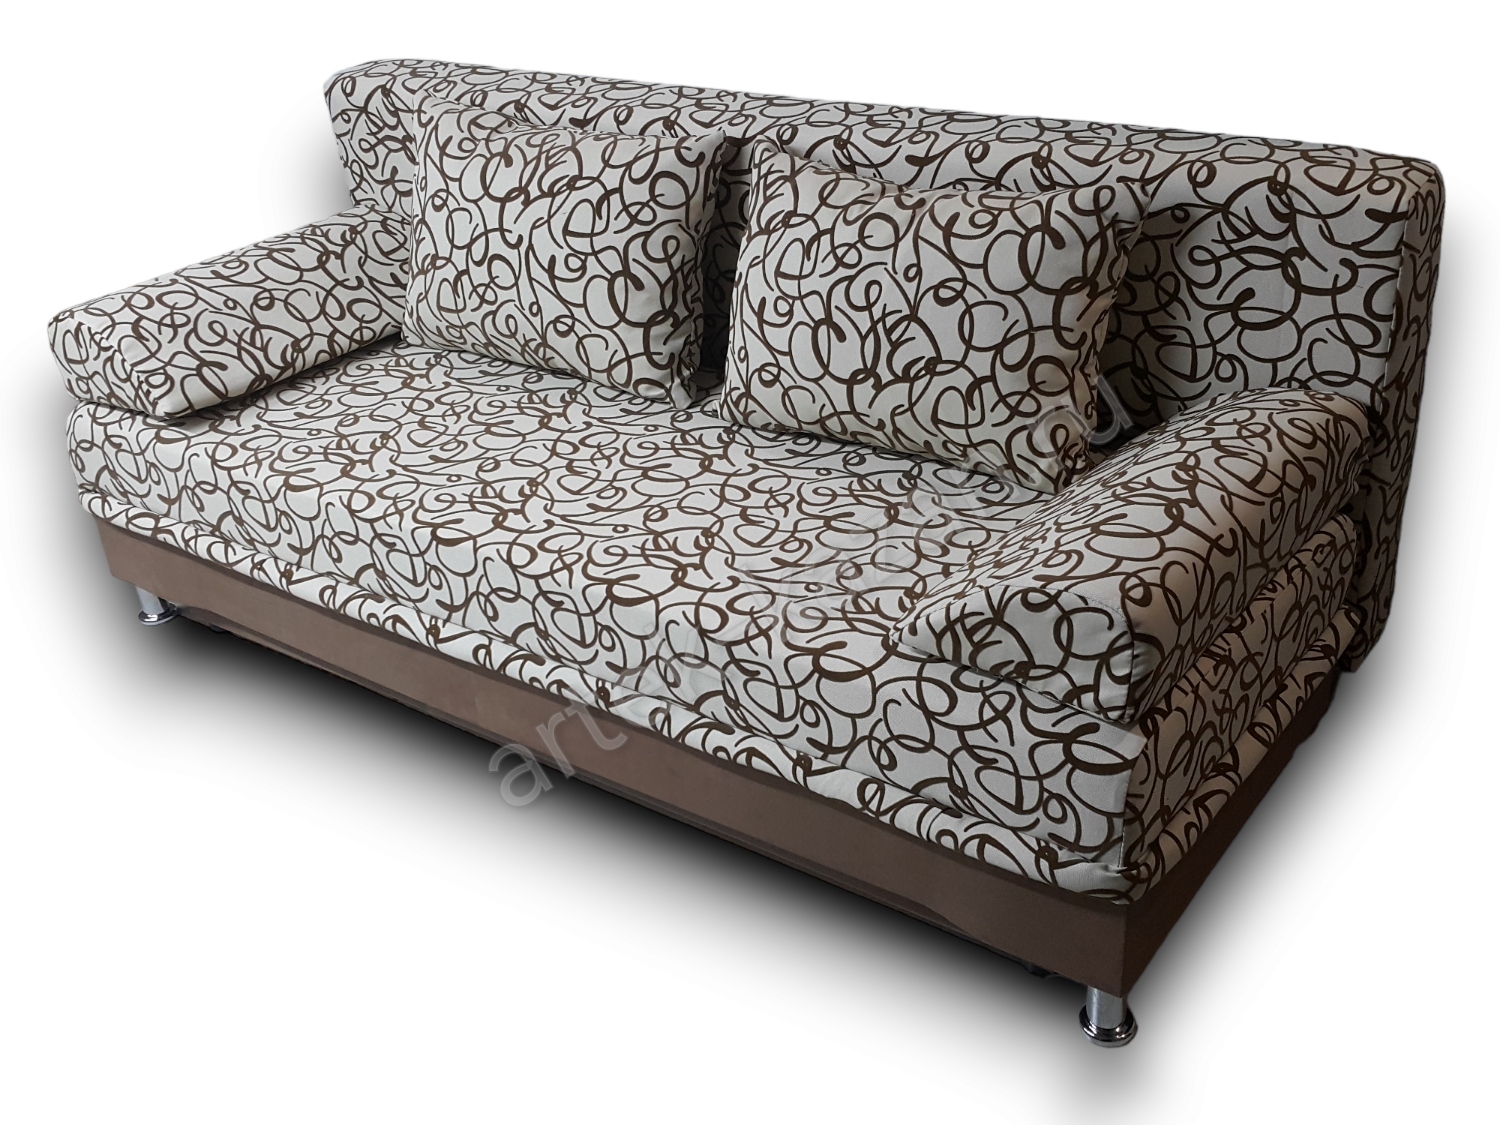 диван еврокнижка Эконом фото № 142. Купить недорогой диван по низкой цене от производителя можно у нас.